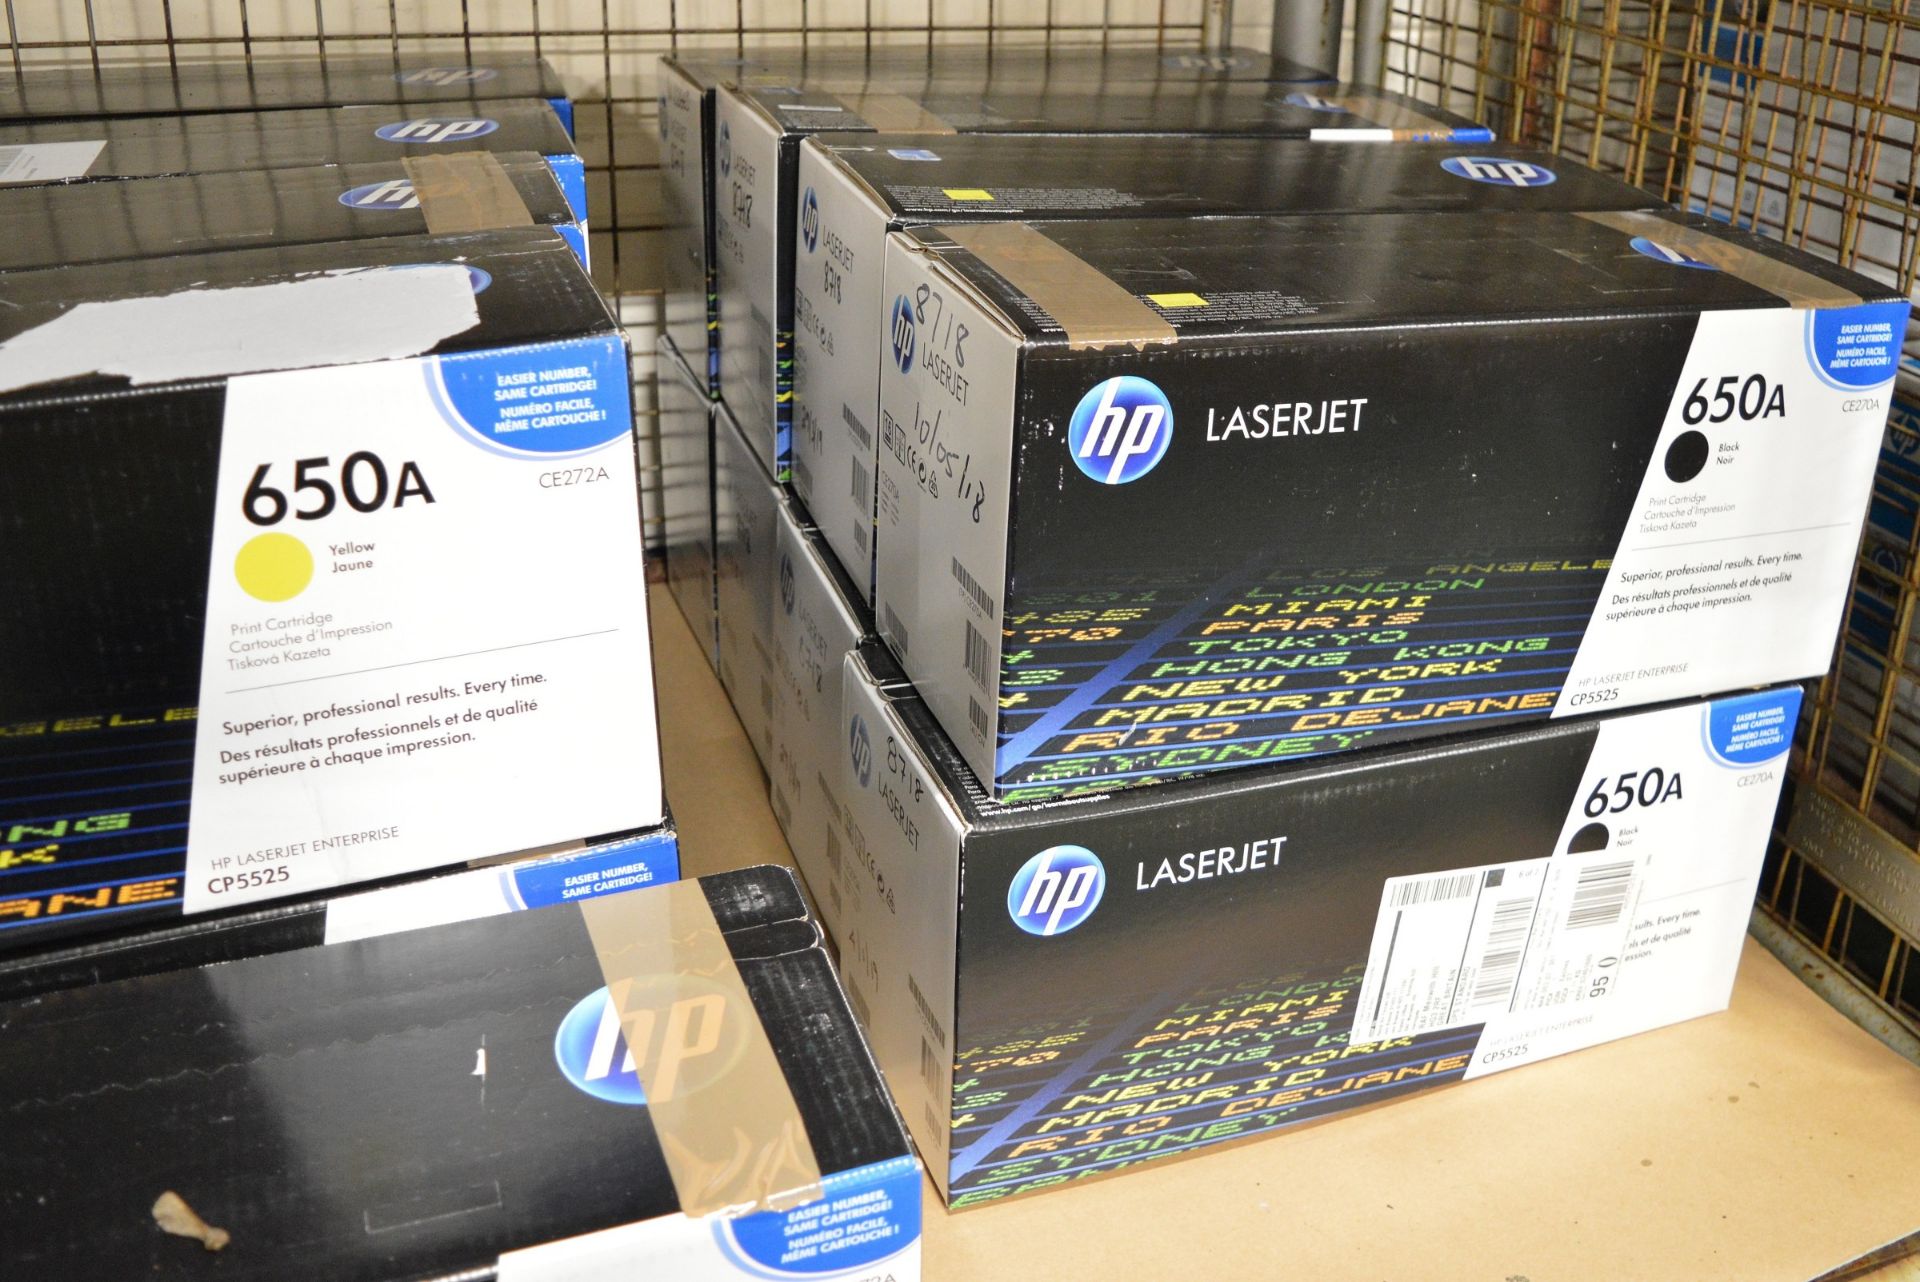 9x HP LaserJet 650A CE272A Yellow Print Cartridges, 8x HP LaserJet 650A CE270A Black Print - Image 3 of 4